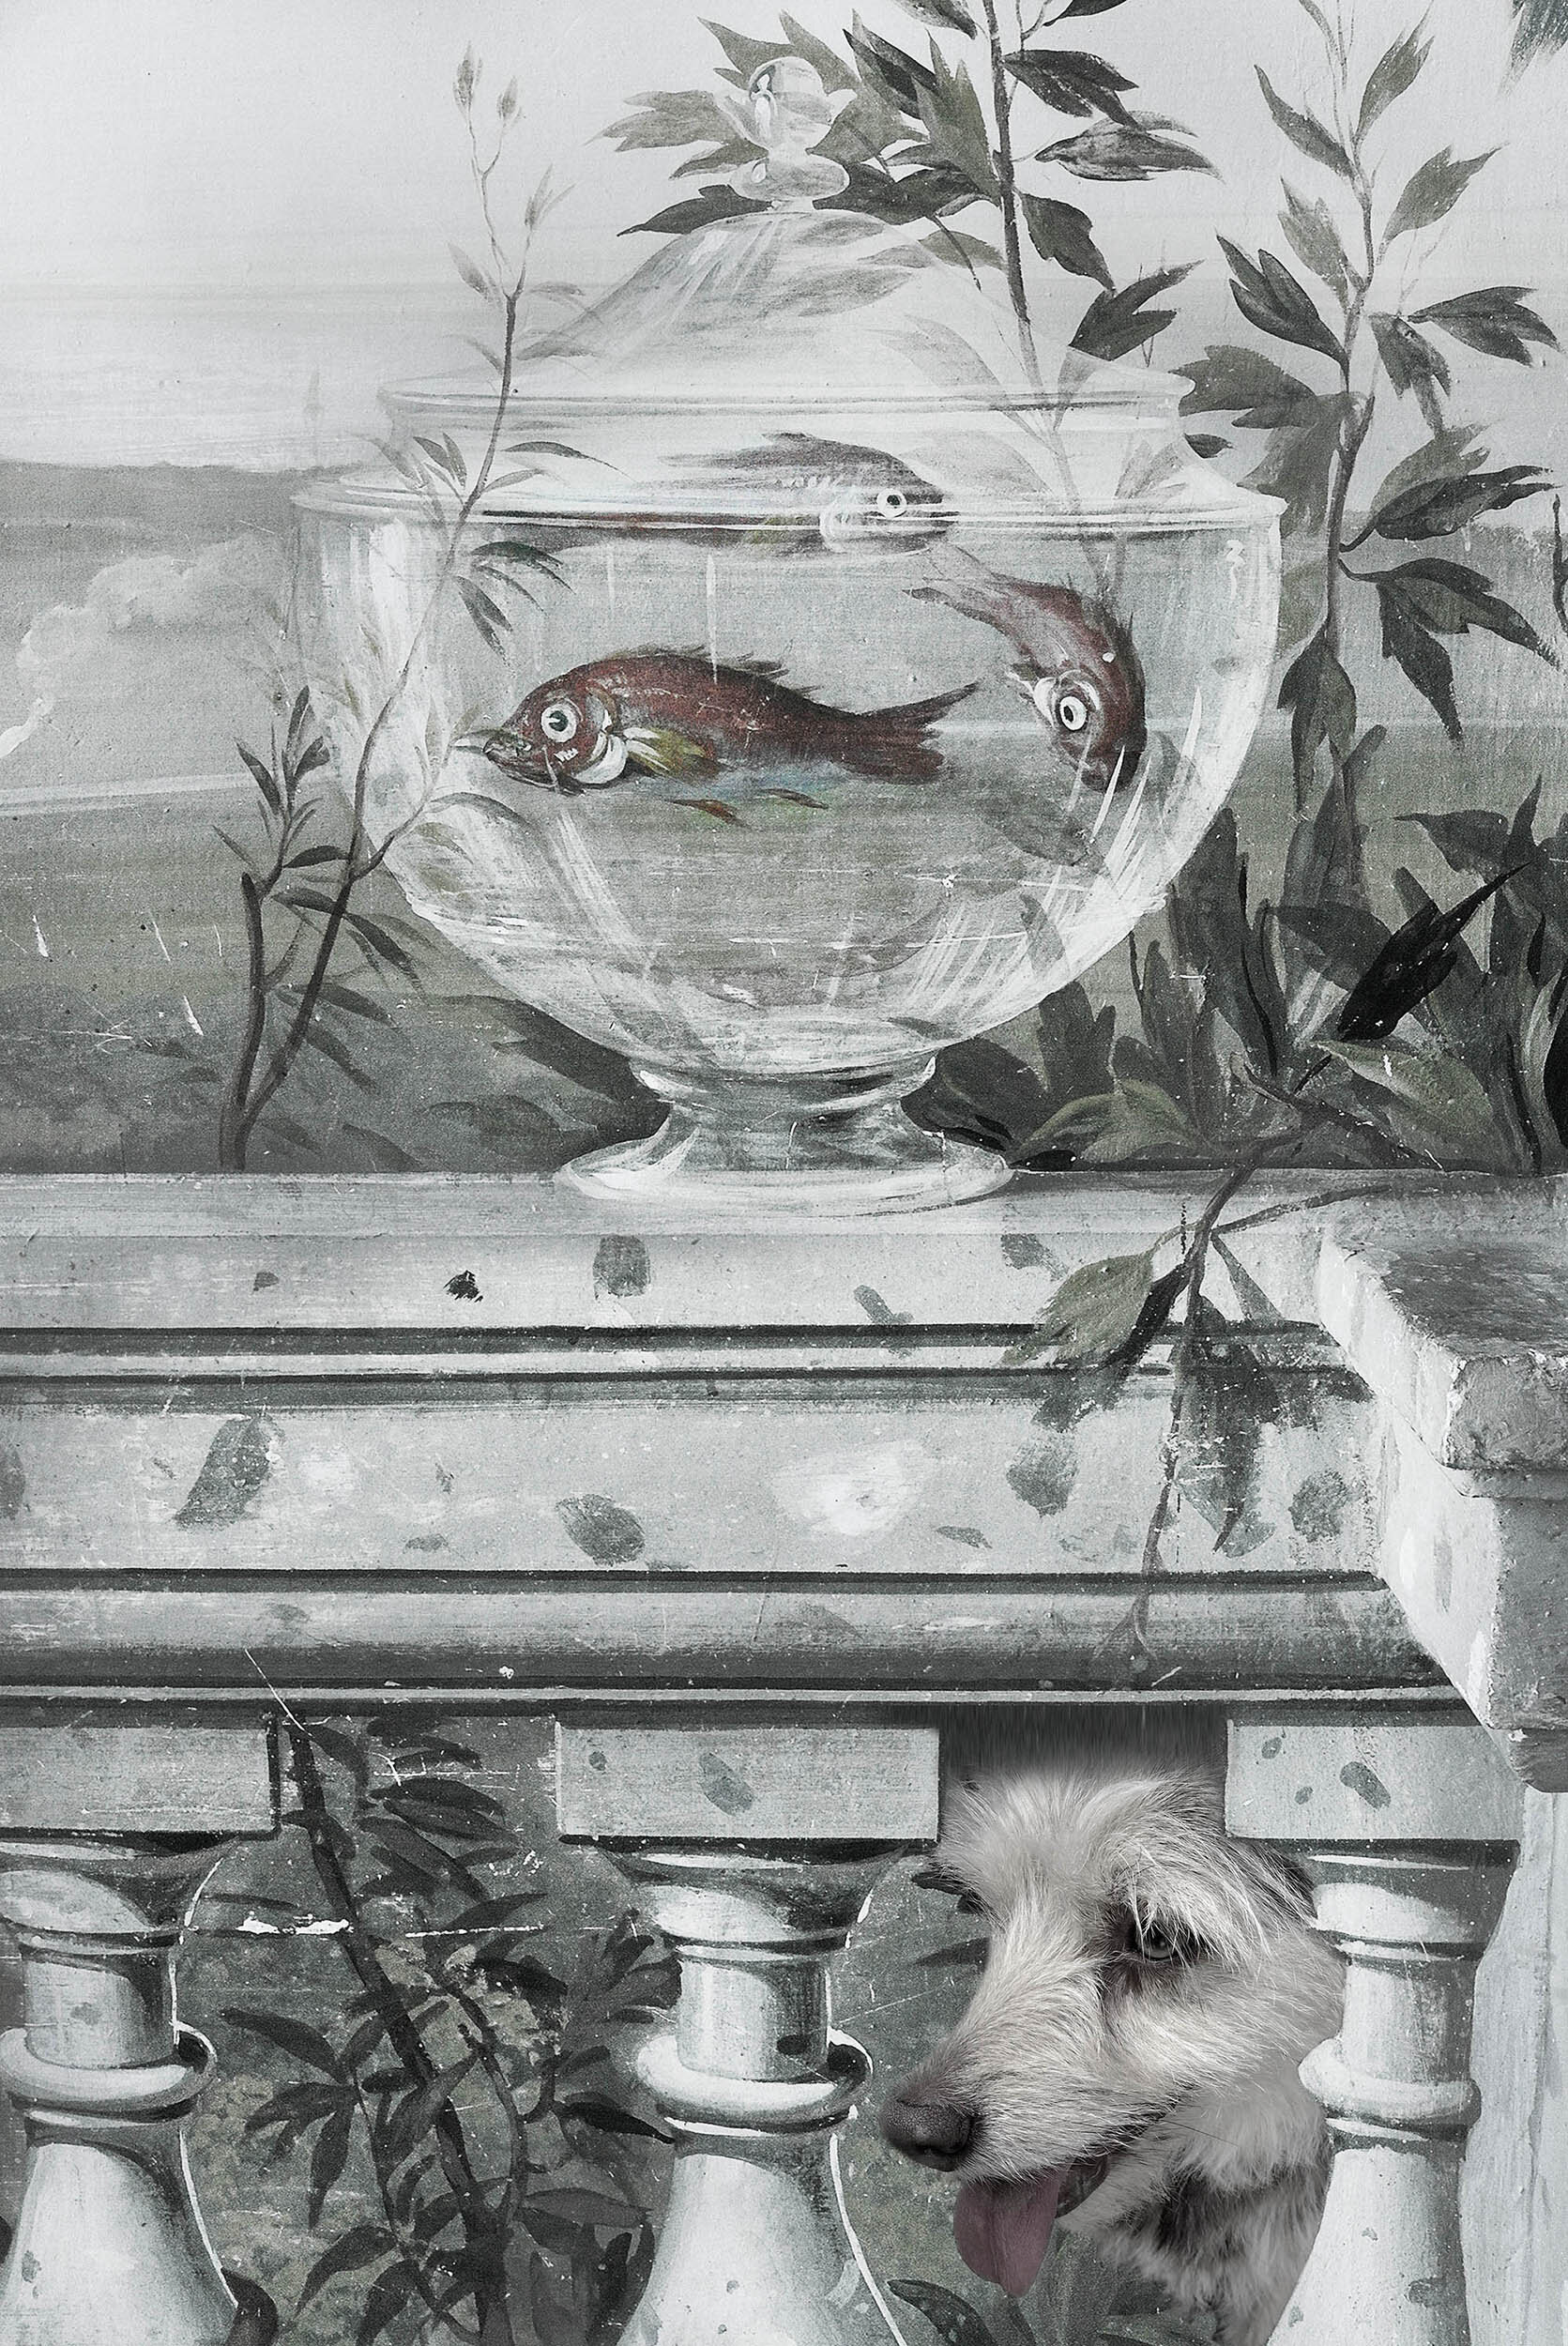  Fishbowl Dog, 2015 